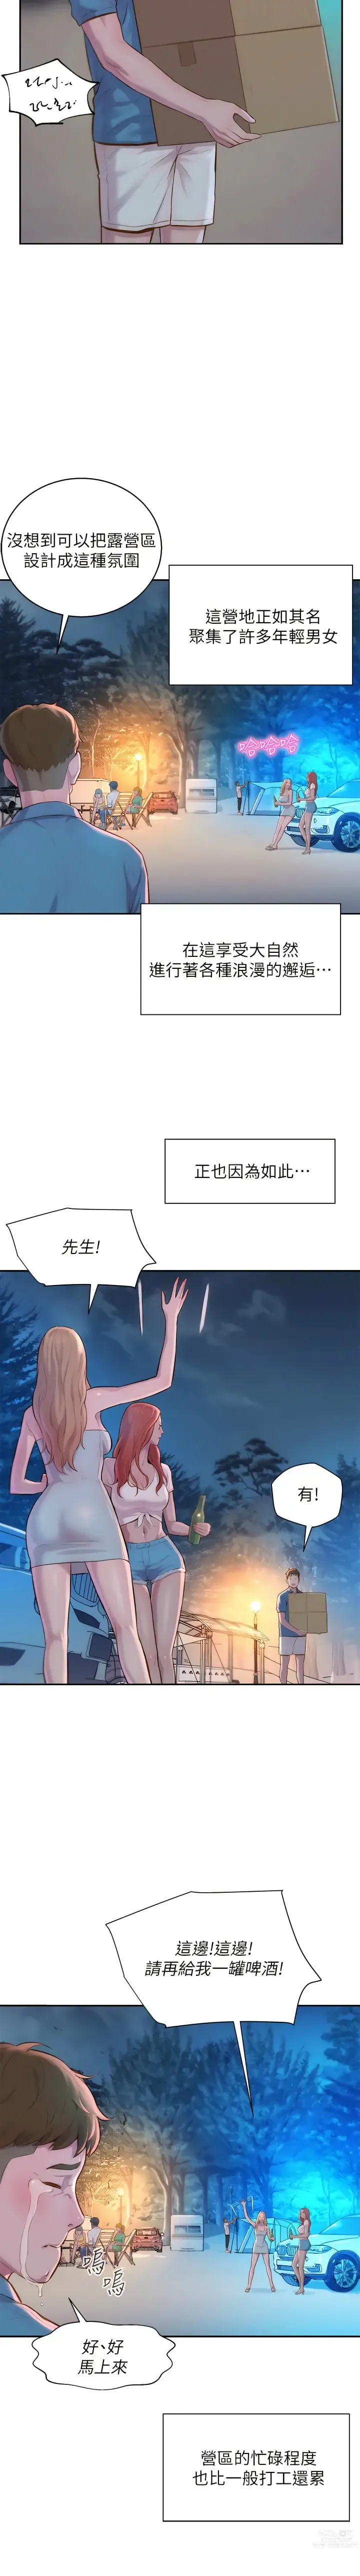 Page 31 of manga 浪漫露营／Romance Camping